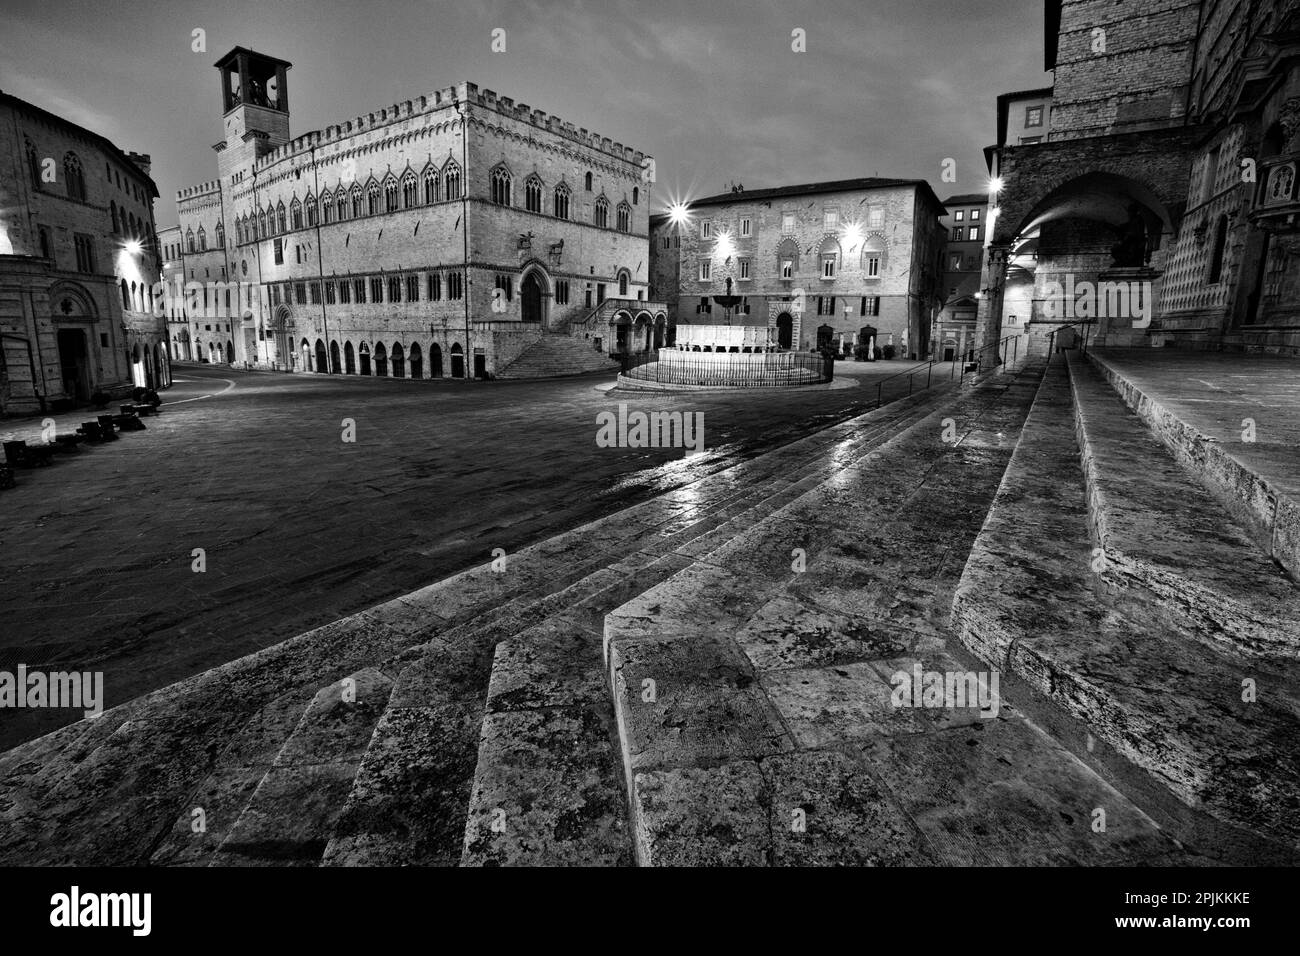 Italien, Umbrien, Perugia. Palazzo dei Priori und Fontana Maggiore, ein mittelalterlicher Brunnen auf der Piazza IV Novembre. Stockfoto